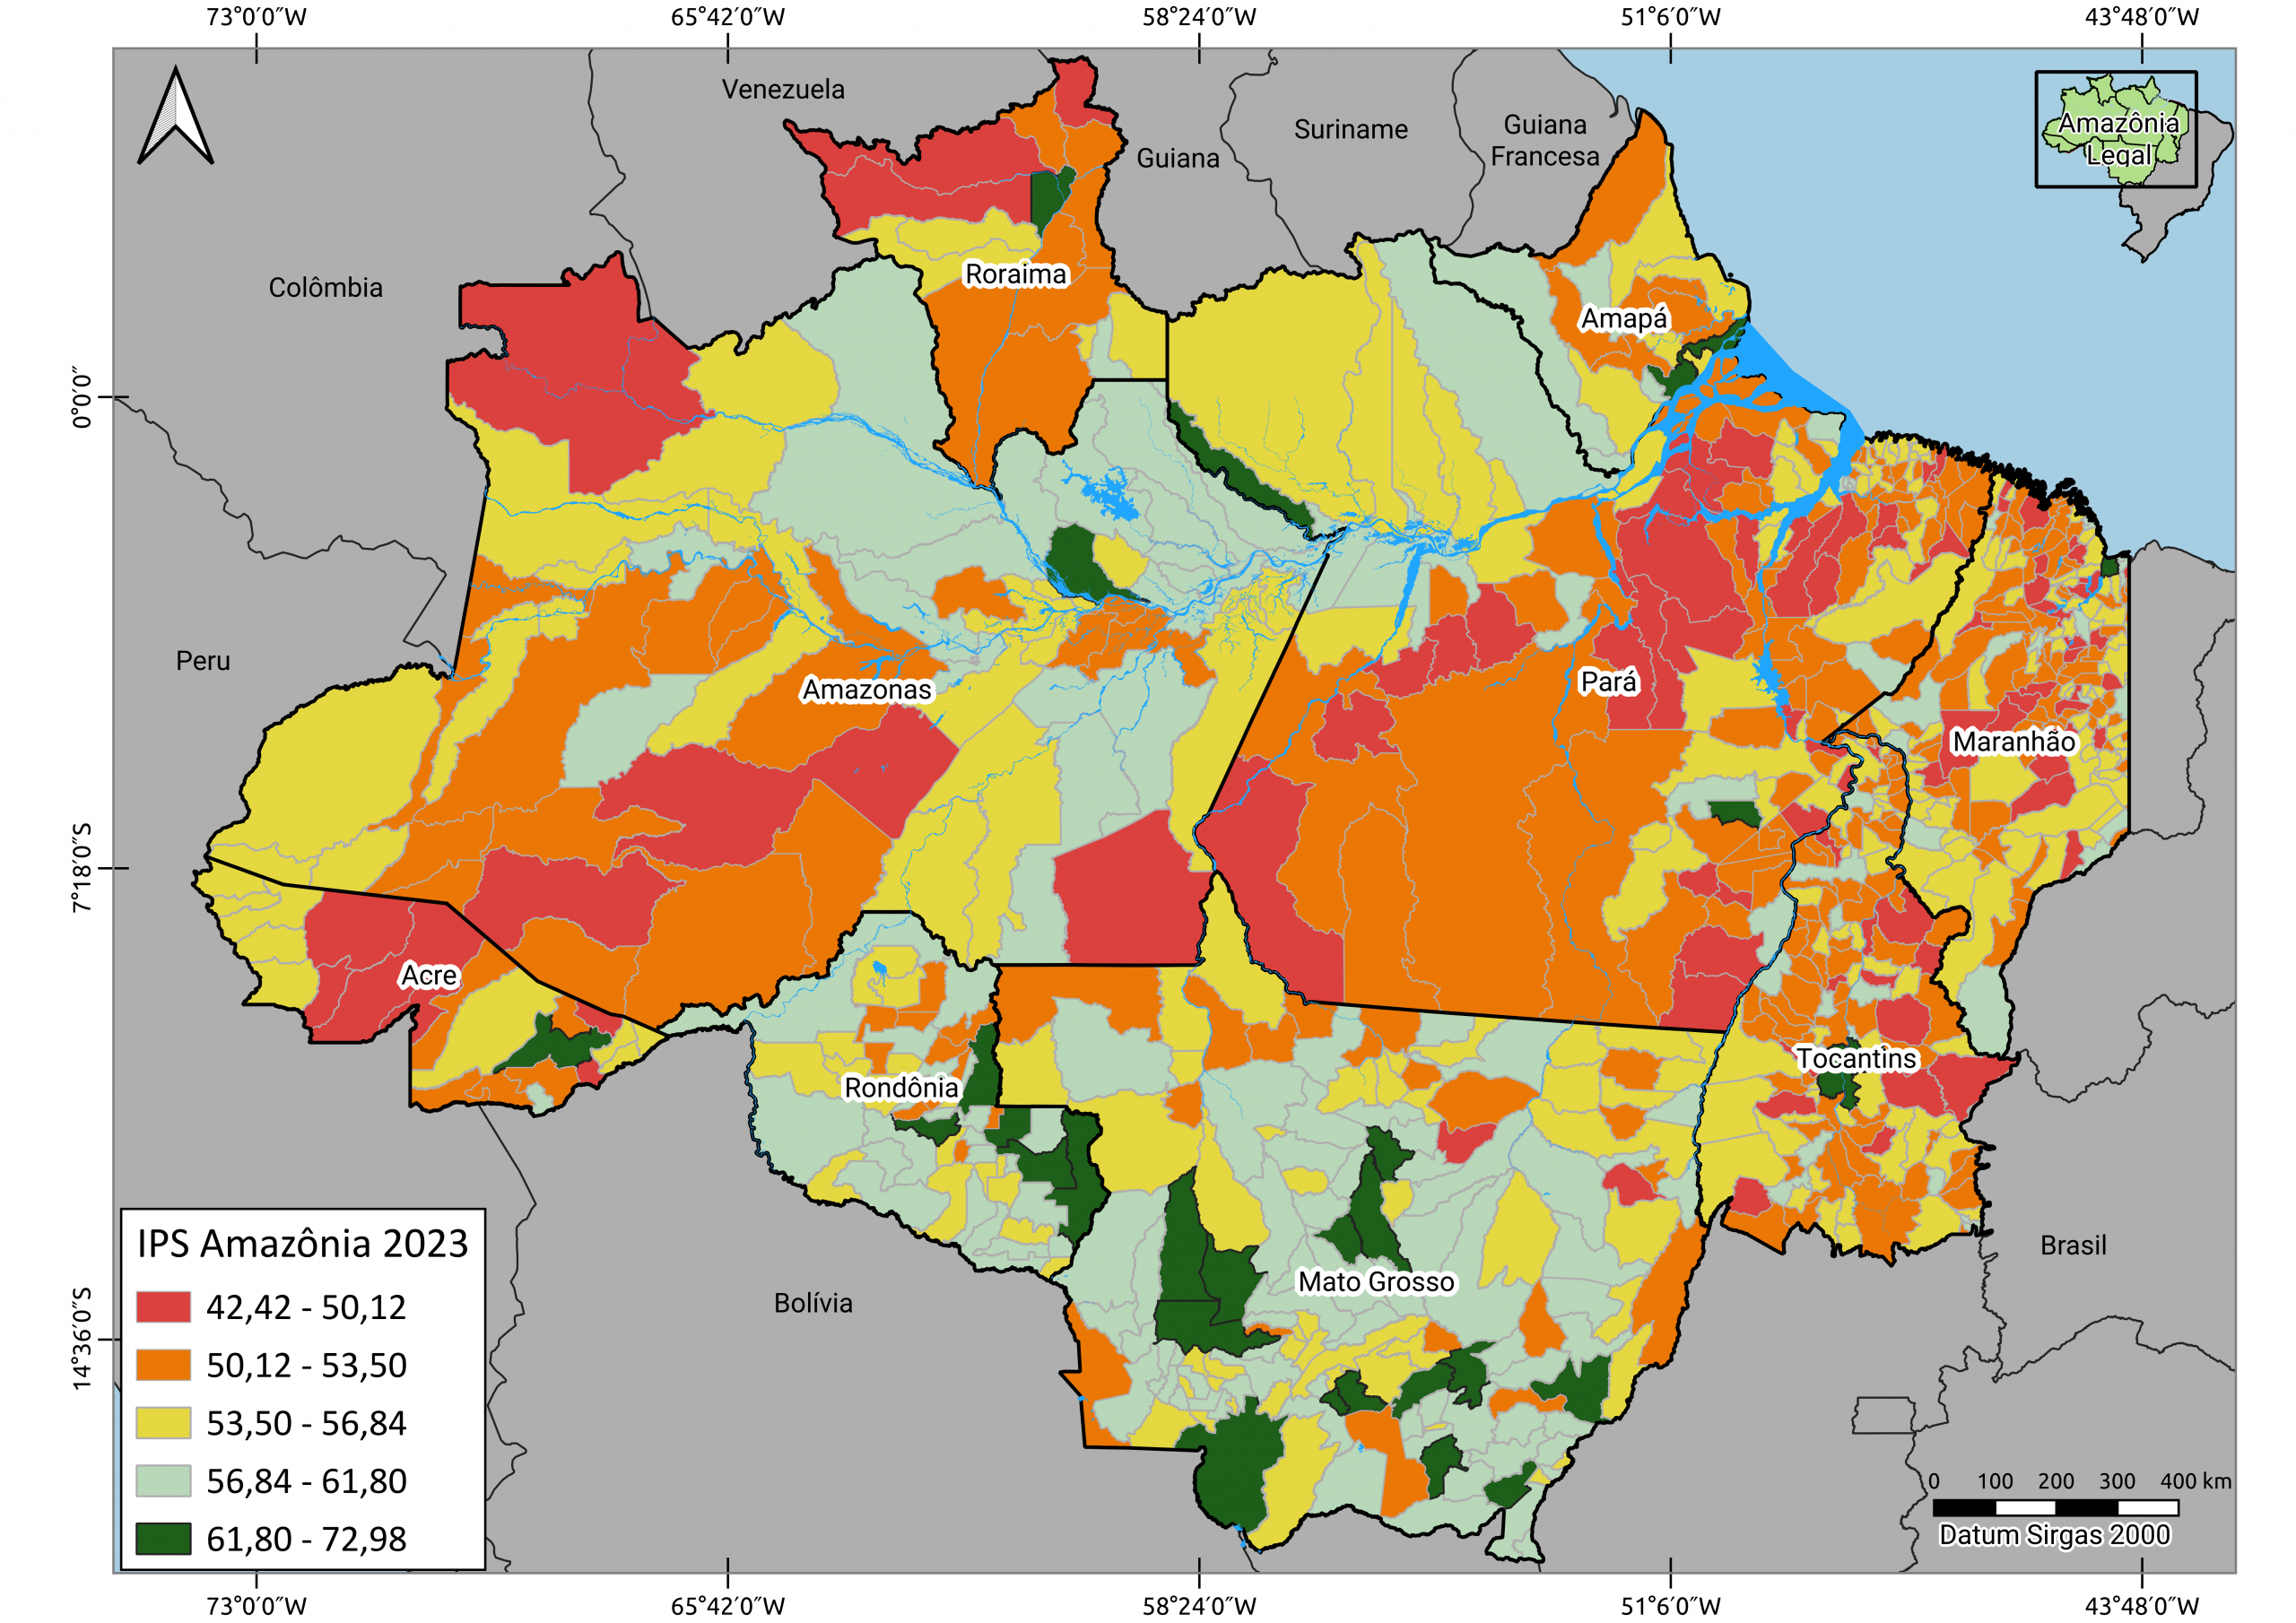 1. Mapa mostra desempenho dos municipios da Amazonia Legal conforme as notas no IPS 2023 - Desmatamento piora desenvolvimento social em municípios da Amazônia